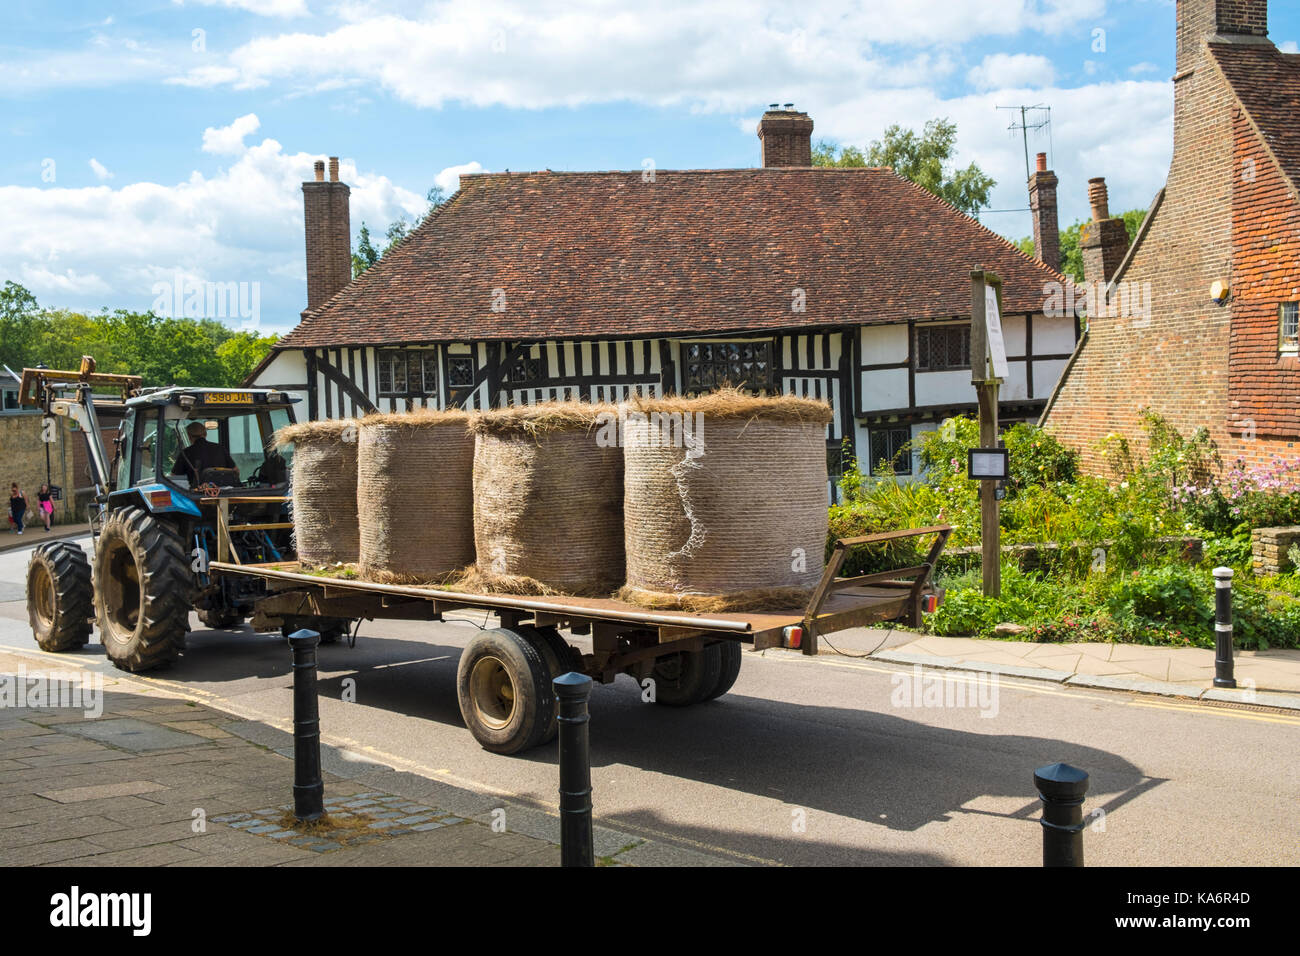 Fardos de paja en un tractor va a la comunidad a través de la pintoresca ciudad de Battle, East Sussex, Inglaterra, Reino Unido. Foto de stock